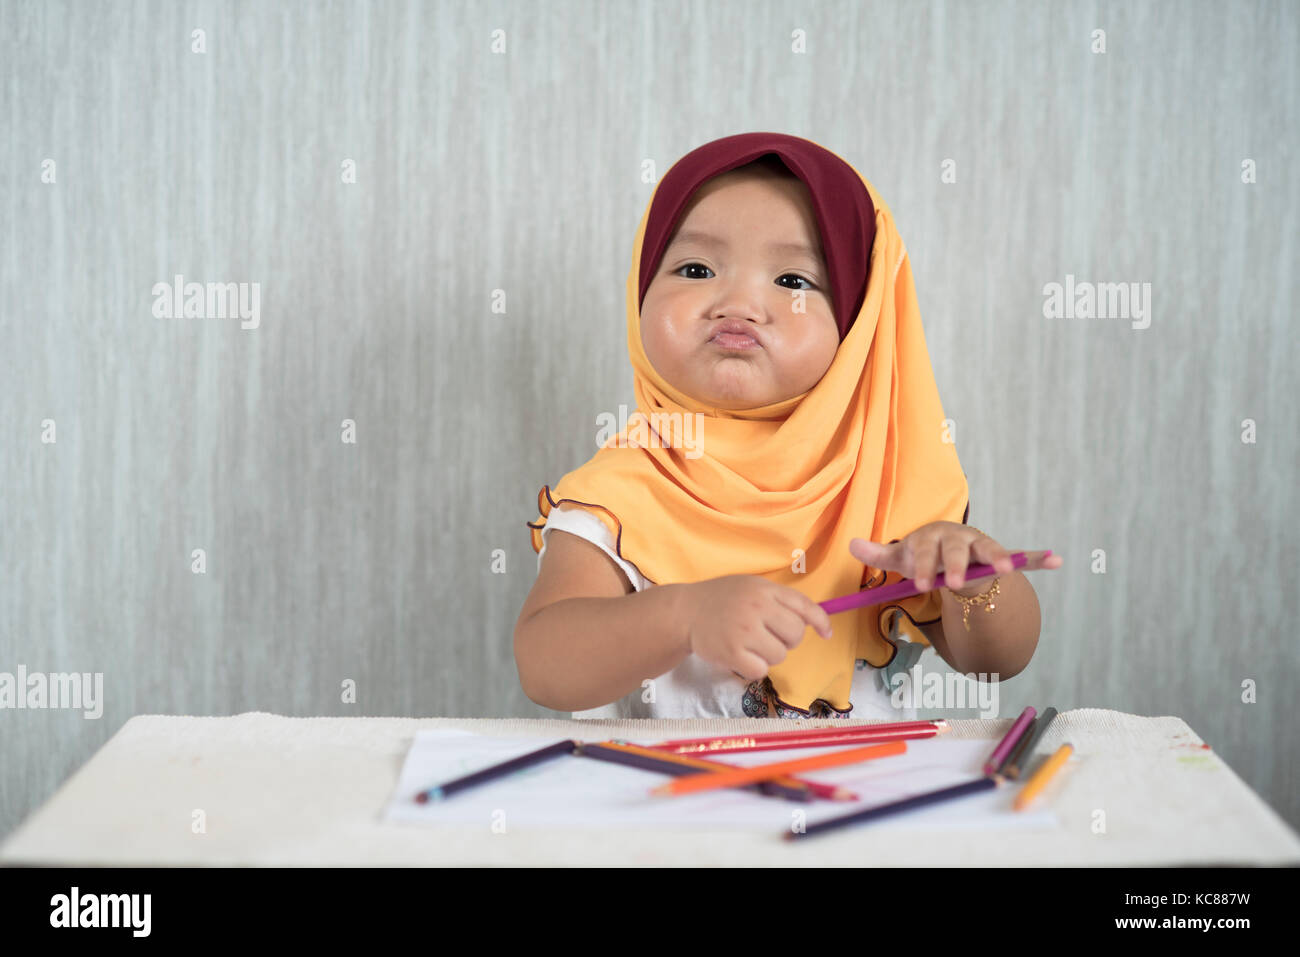 Asiatische Kleinkind/Baby girl Hijab tragen ist Spaß lernen Bleistifte zu verwenden, während Sie lustiges Gesicht. Bildung Konzept. smiling Baby/Kleinkind Stockfoto